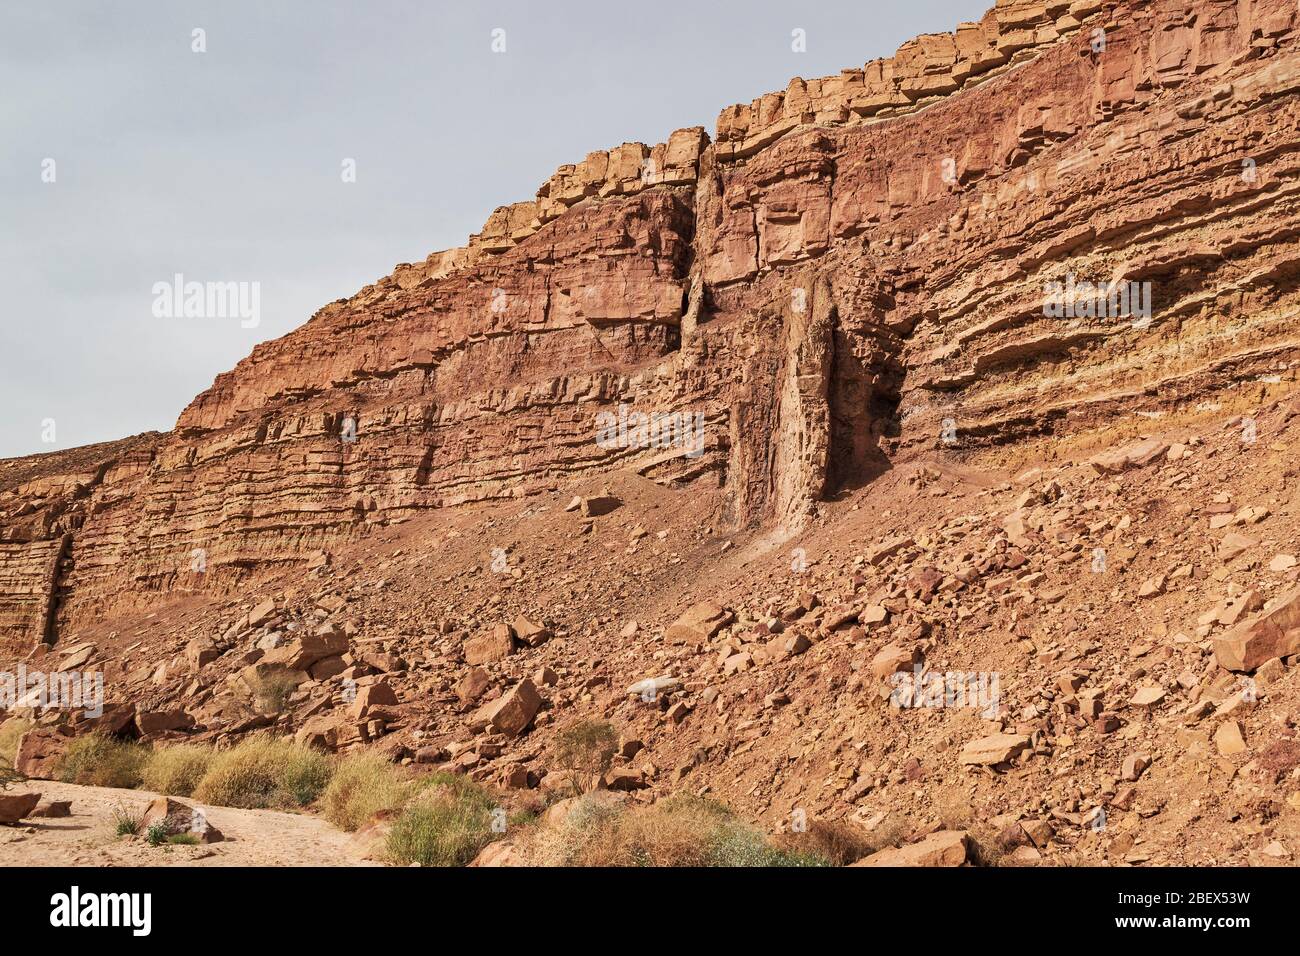 Geologische Details der Klippe neben wadi ardon im Krater makhtesh ramon, die zwei Magmadeiche mit dem Bachbett im Vordergrund zeigt Stockfoto